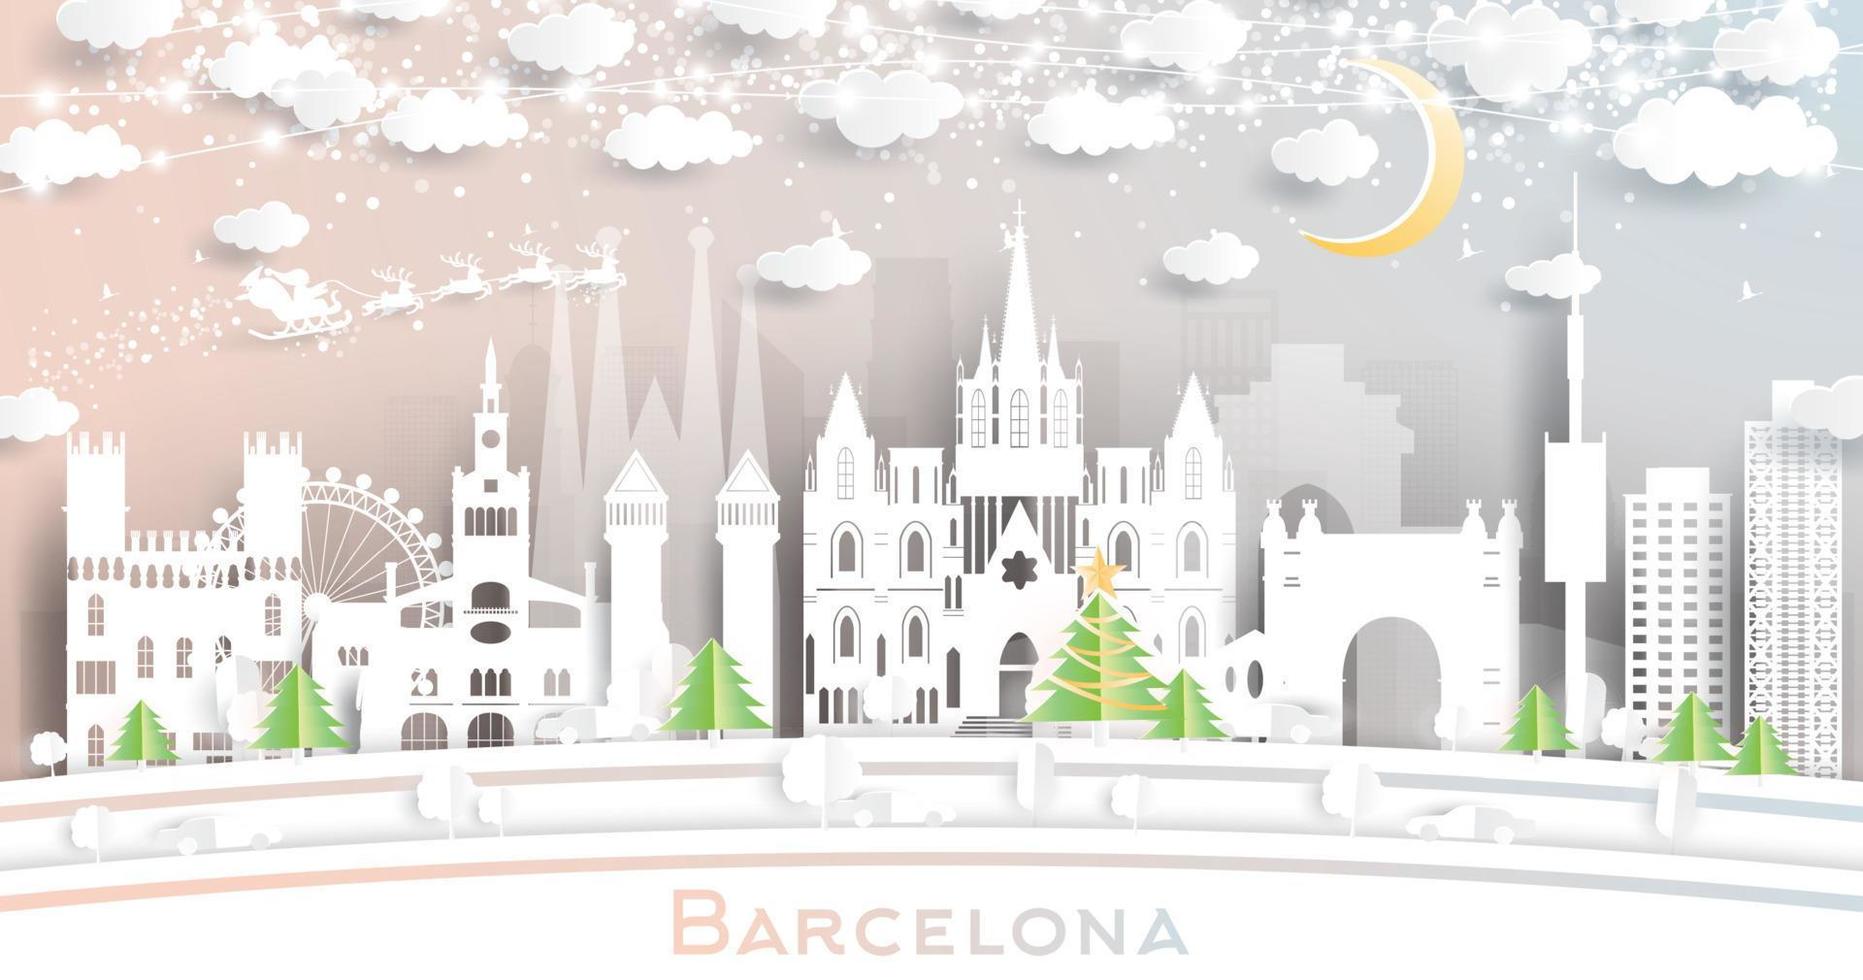 barcelona Spanien stad horisont i papper skära stil med snöflingor, måne och neon krans. vektor